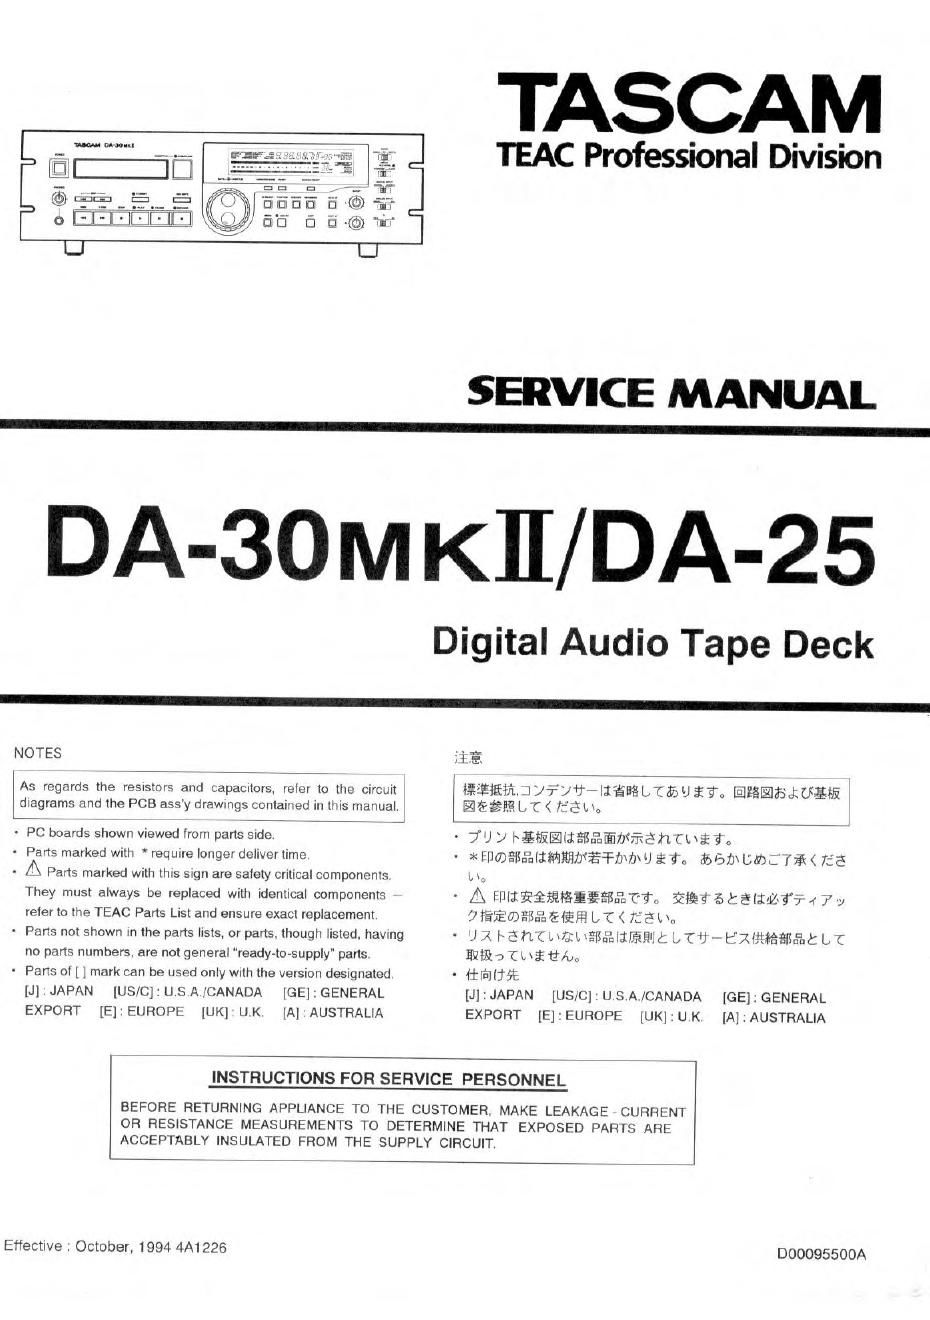 Tascam DA 25 DA 30mkII Service Manual